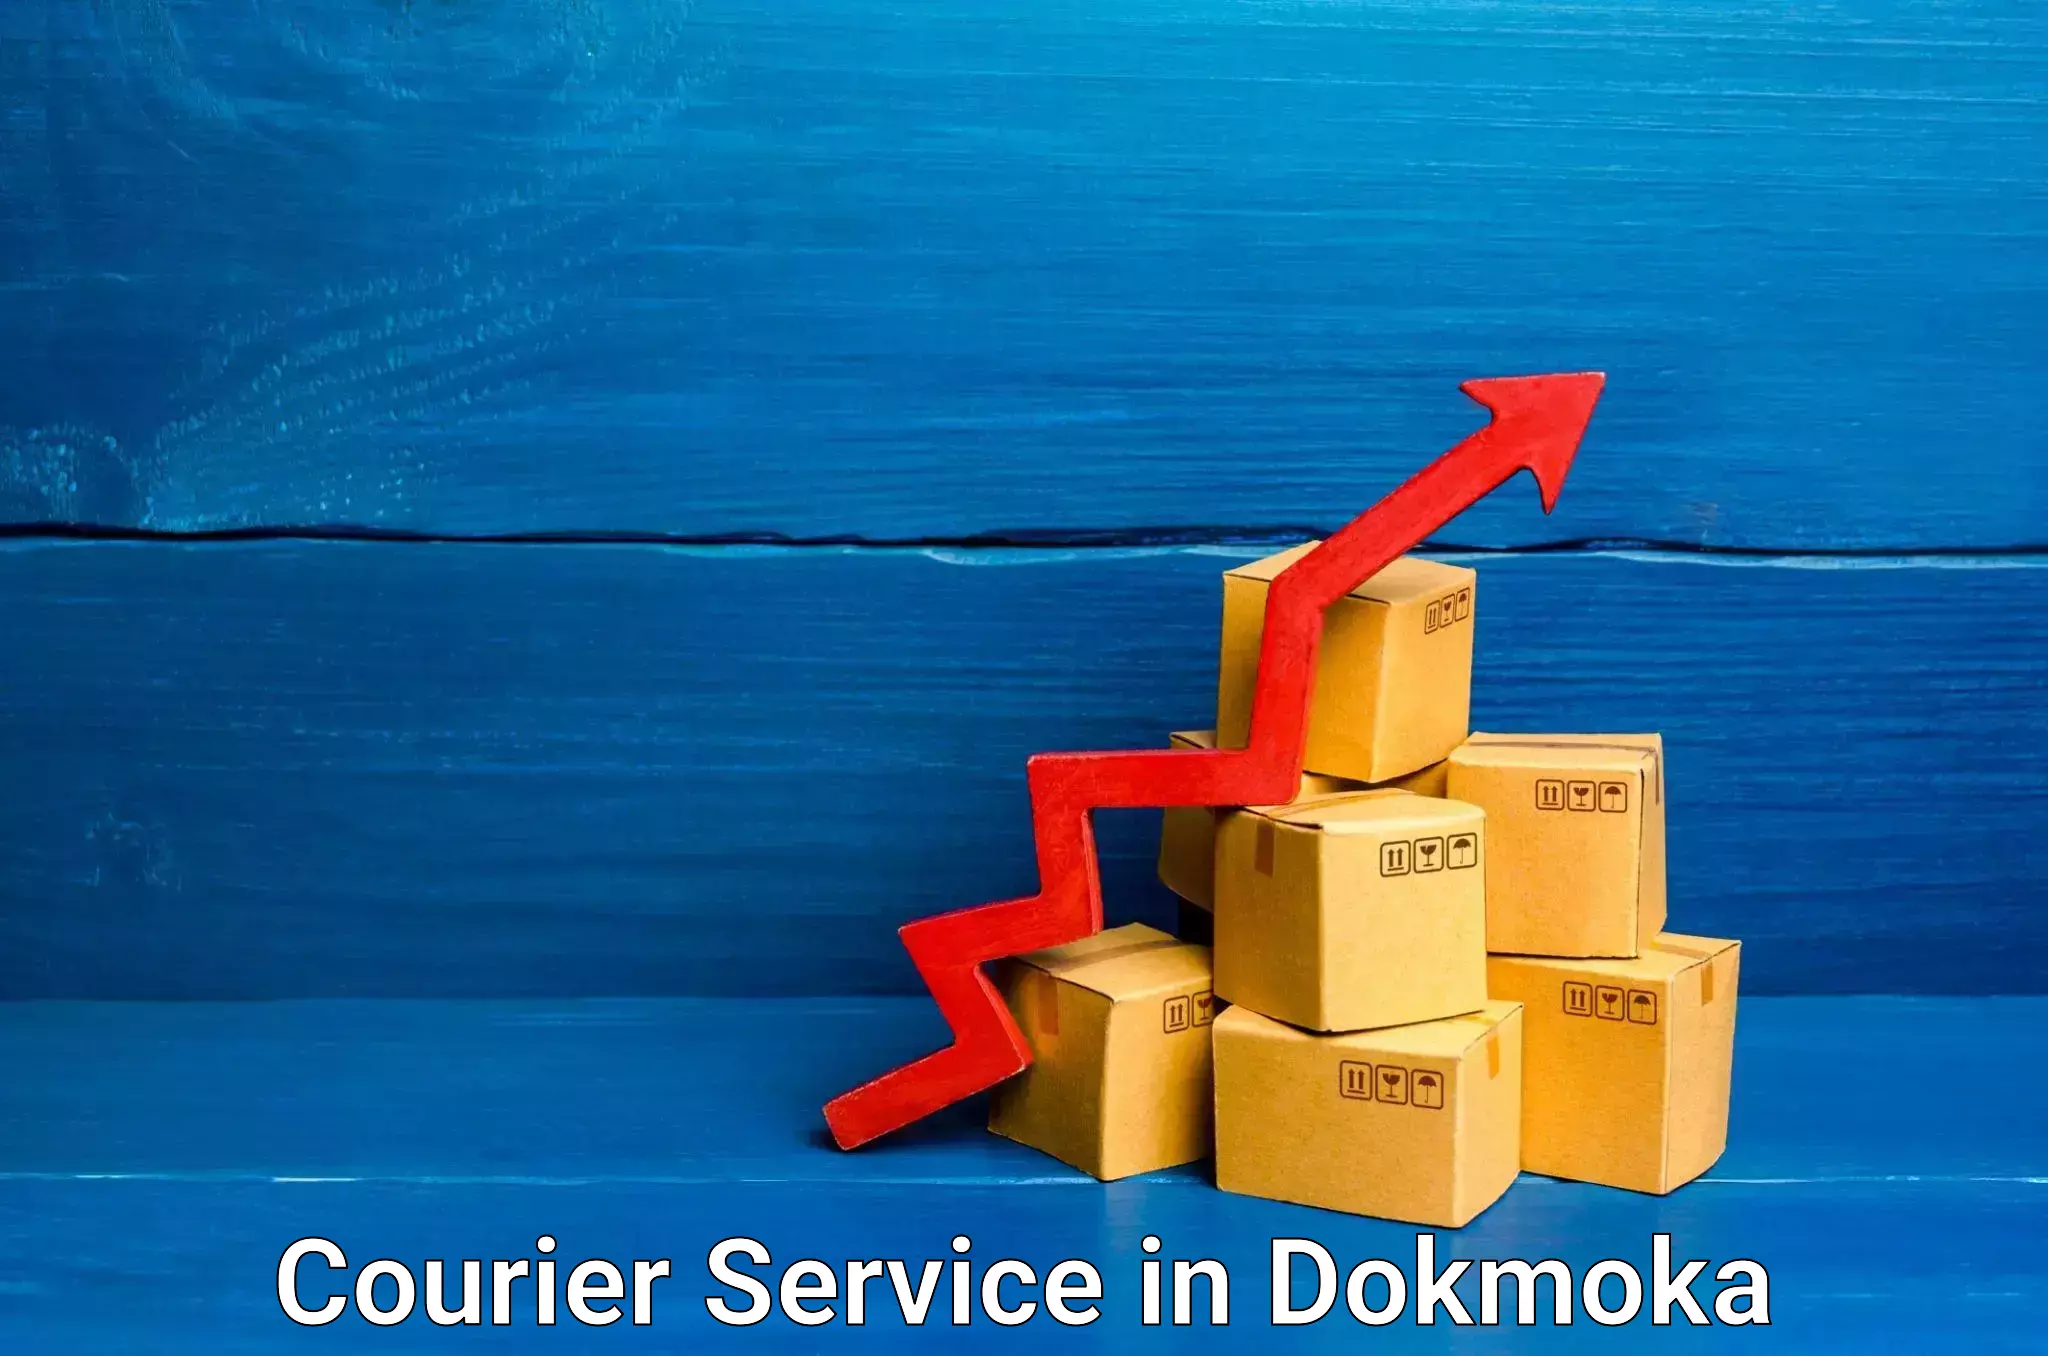 Logistics efficiency in Dokmoka